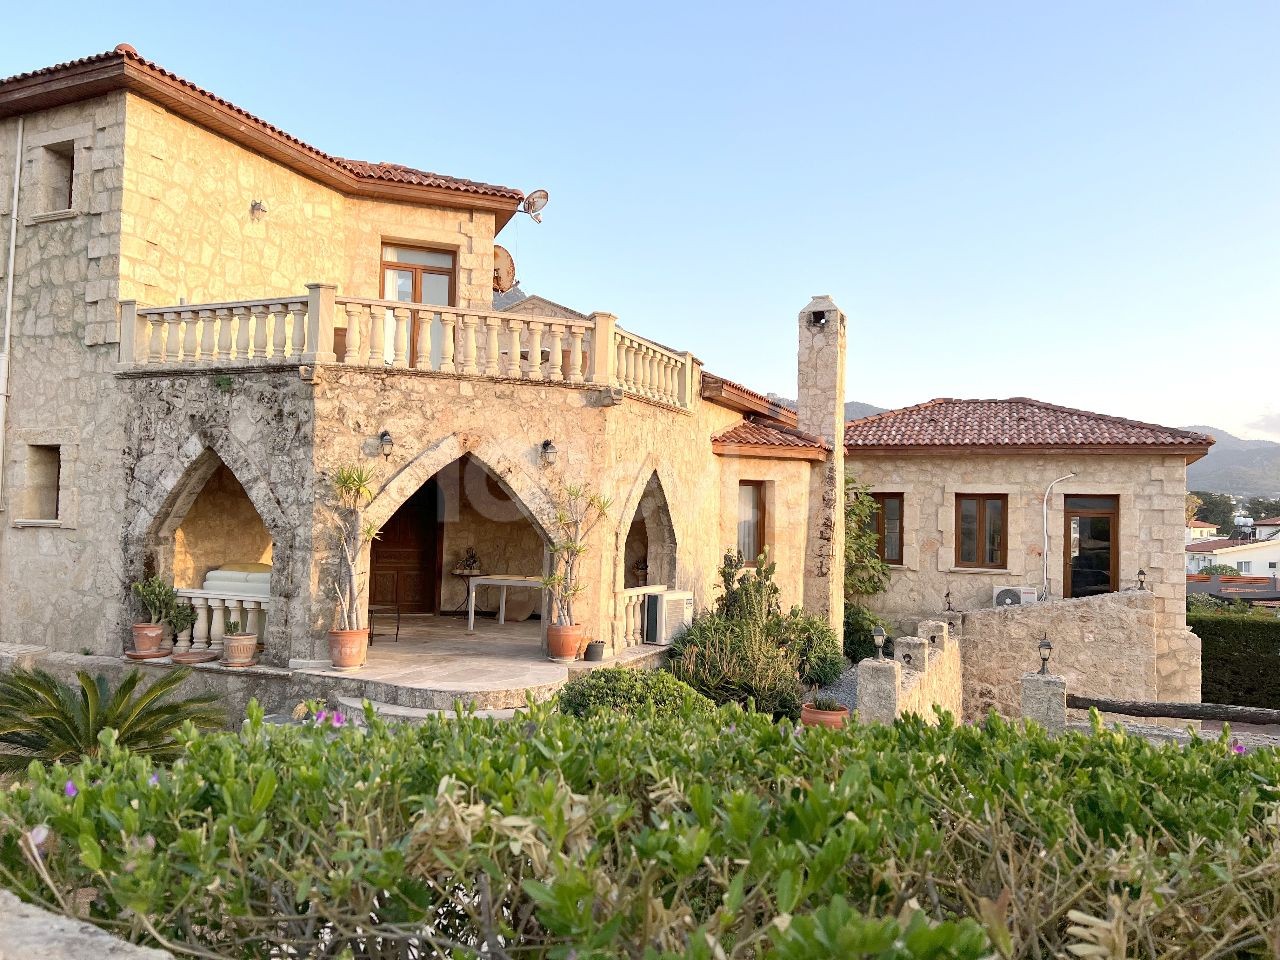 Великолепный каменный дом в Кирении и Каршияка. К услугам гостей 4 спальни, кабинет, частный бассейн и крытый гараж. терраса с прекрасным закатом. Находится в 200 метрах от моря. 05338403555 ** 